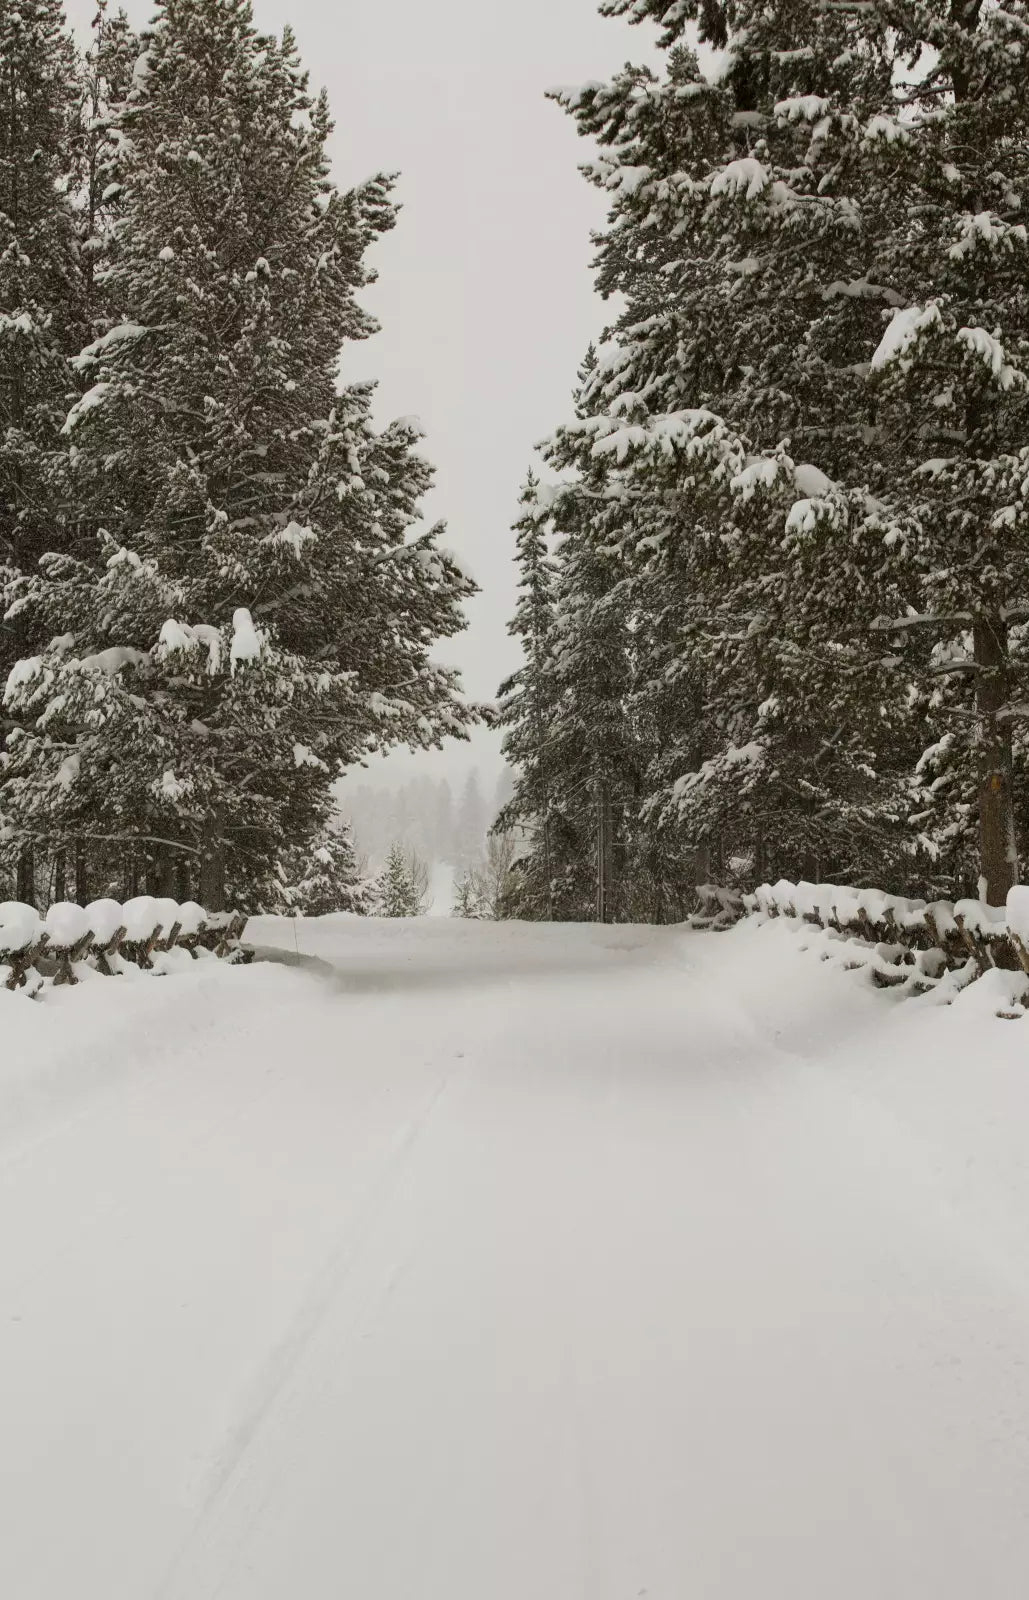 Snowy Roads